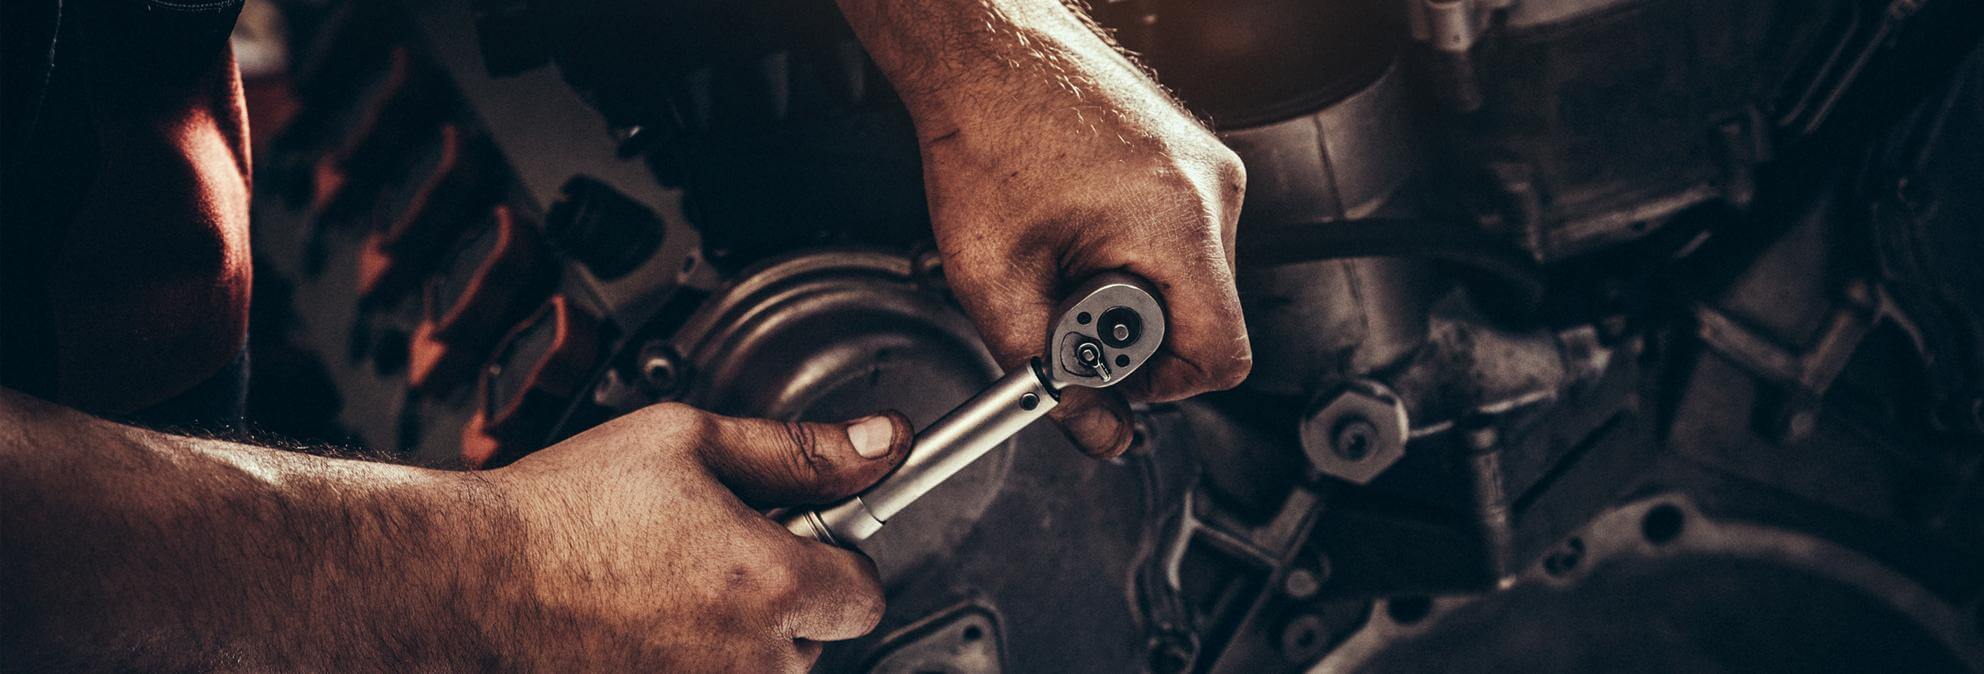 Mechanik naprawiający samochód w warsztacie samochodowym